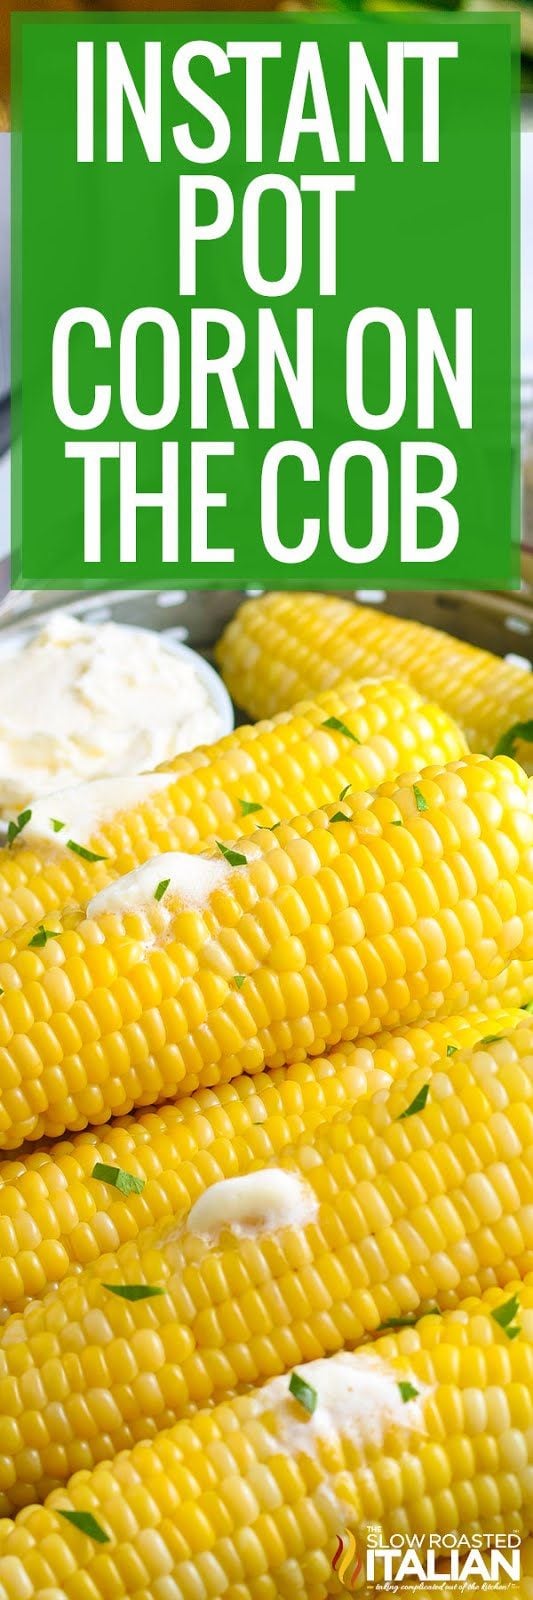 instant pot corn on the cob 